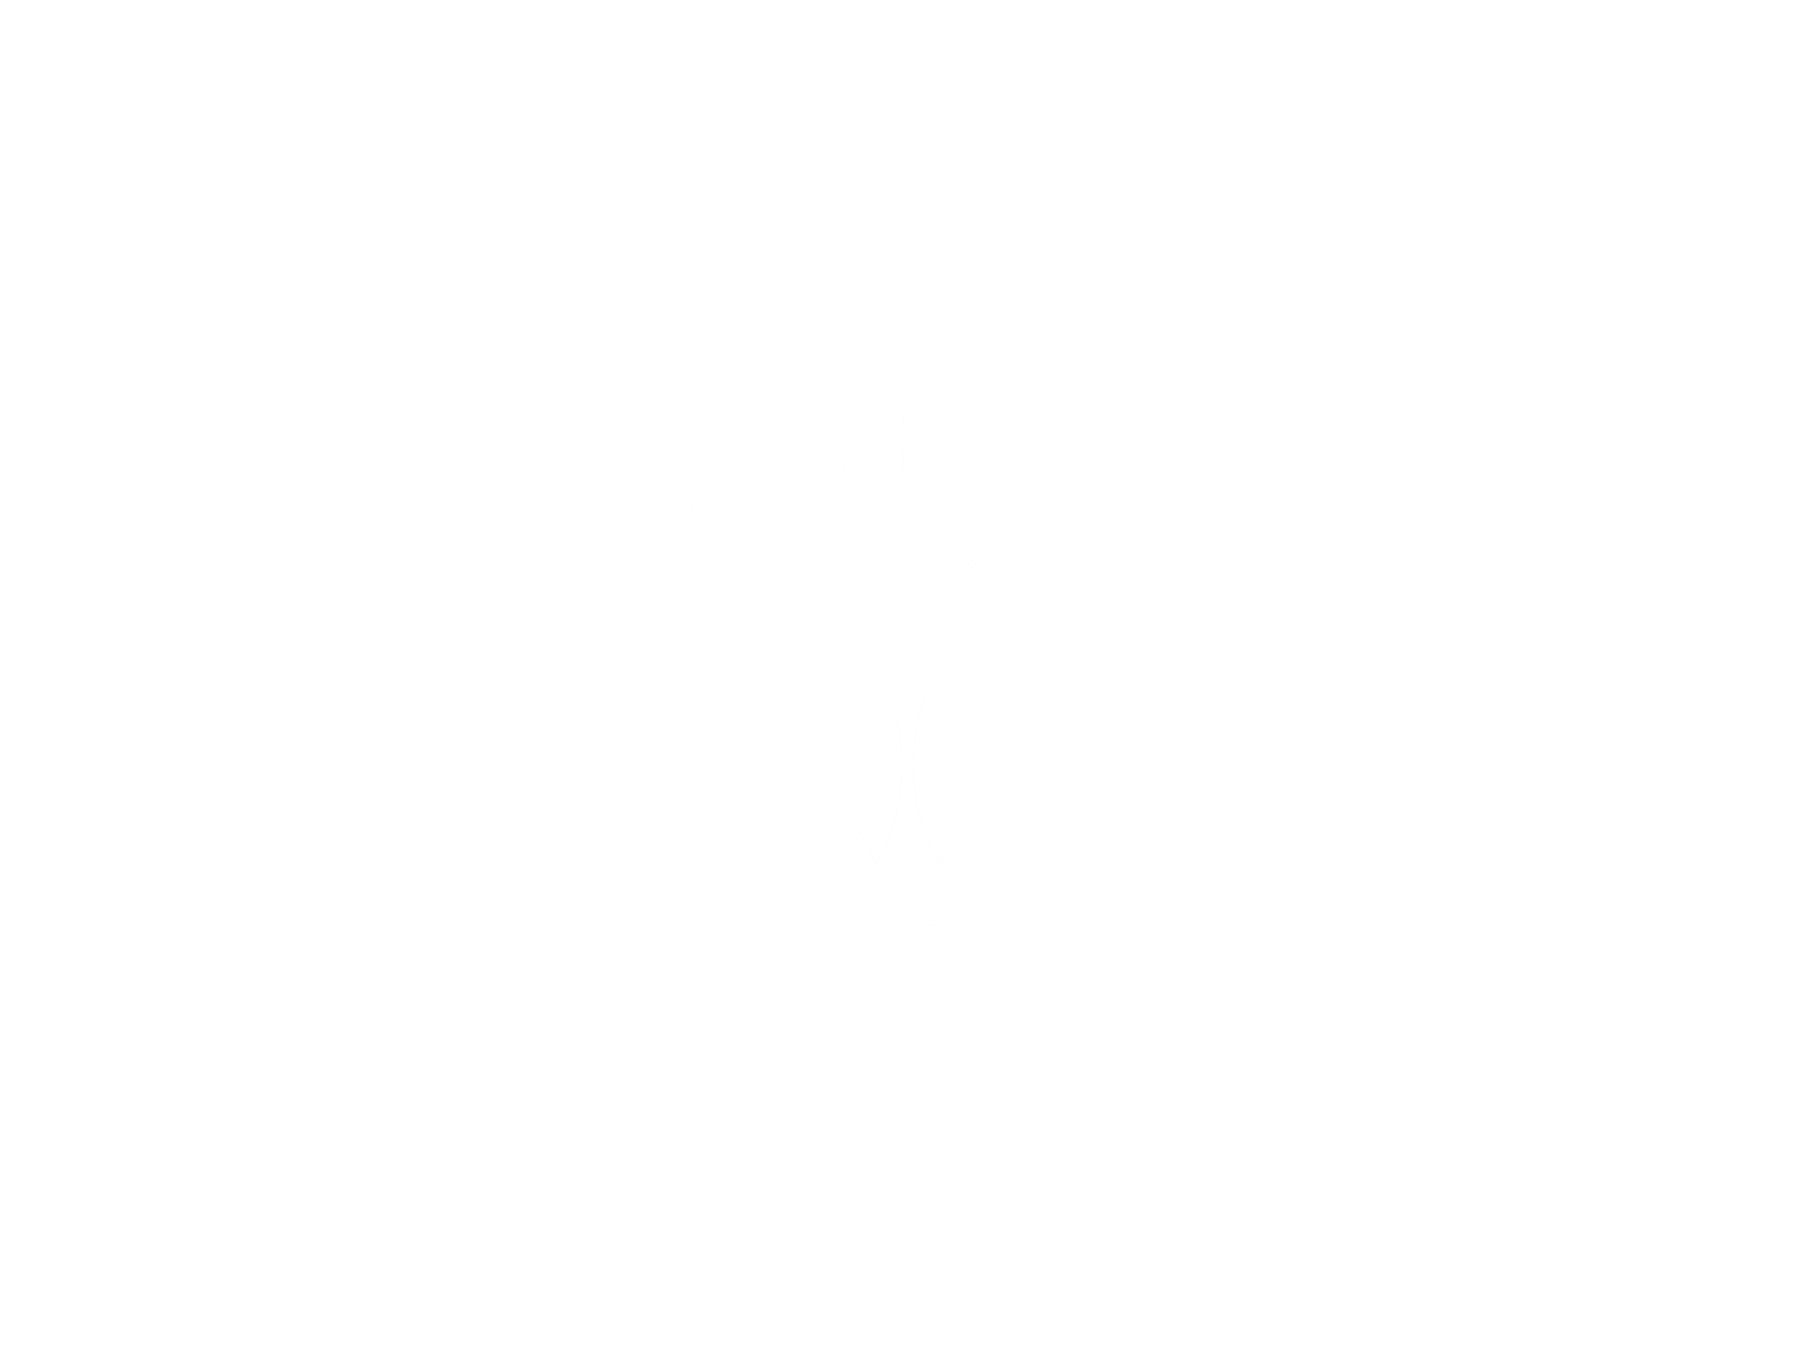 24/7 Care 4U | Healthcare Services